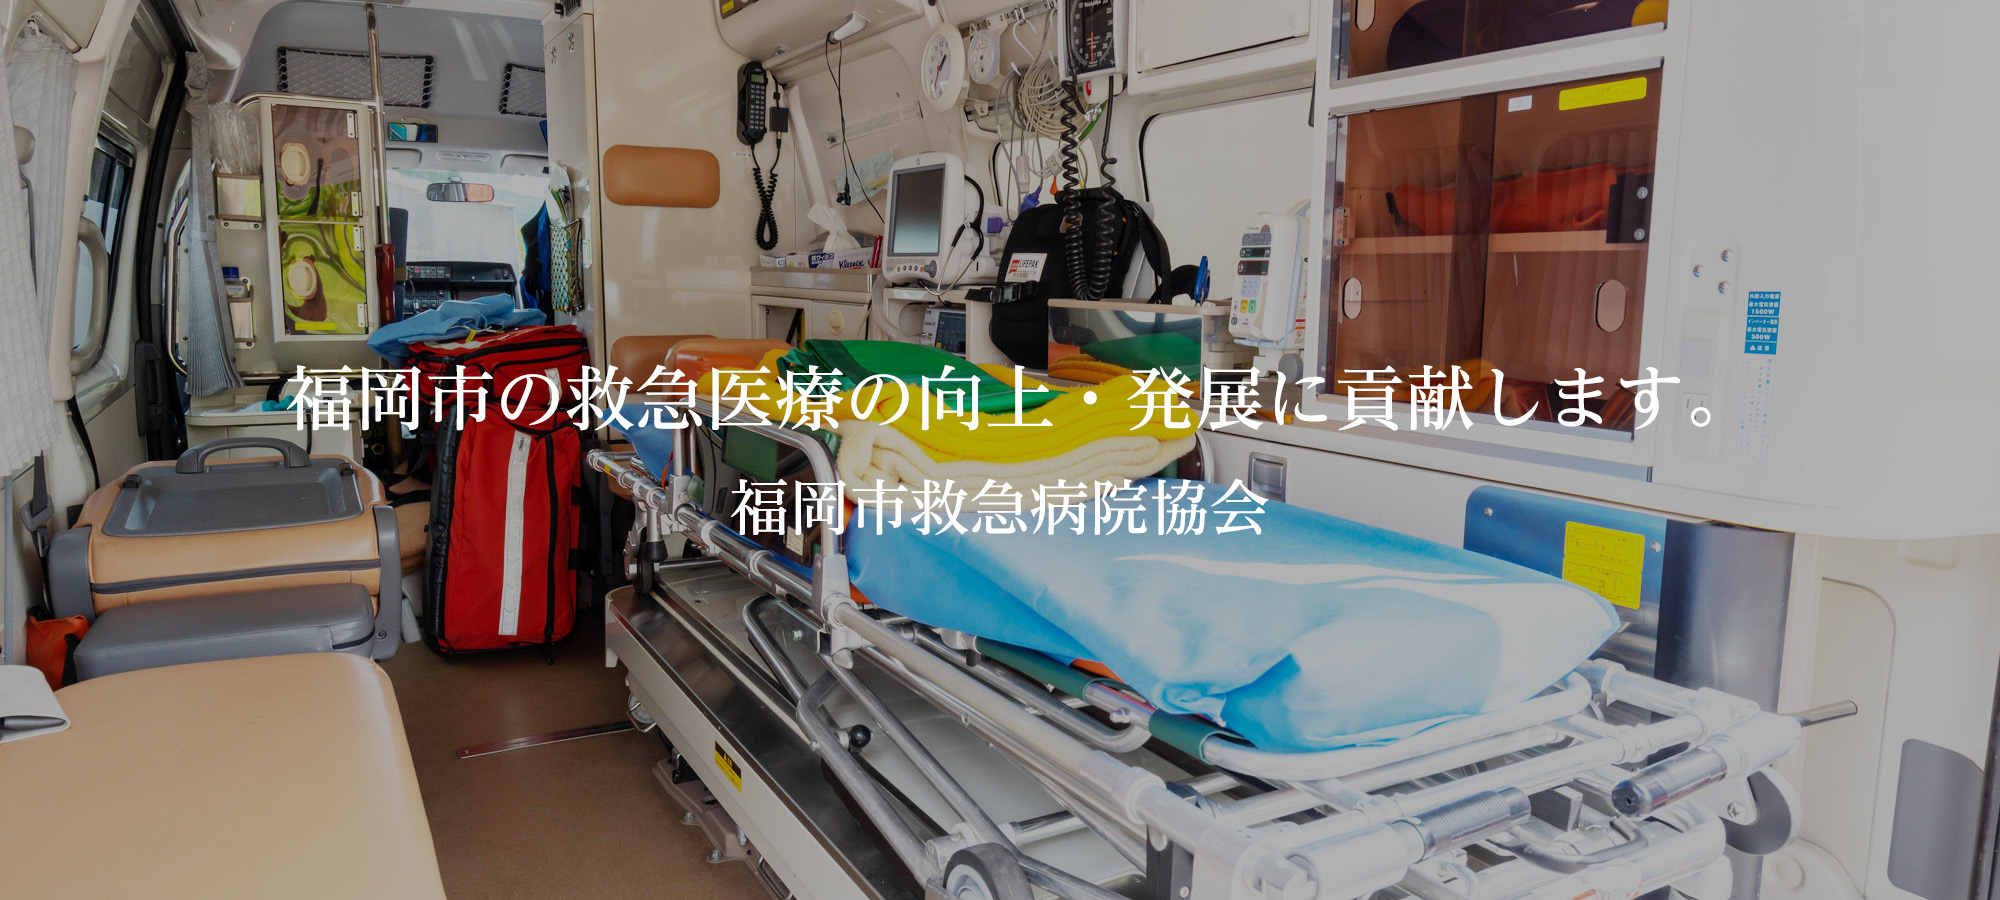 福岡市の救急医療の向上・発展に貢献します。